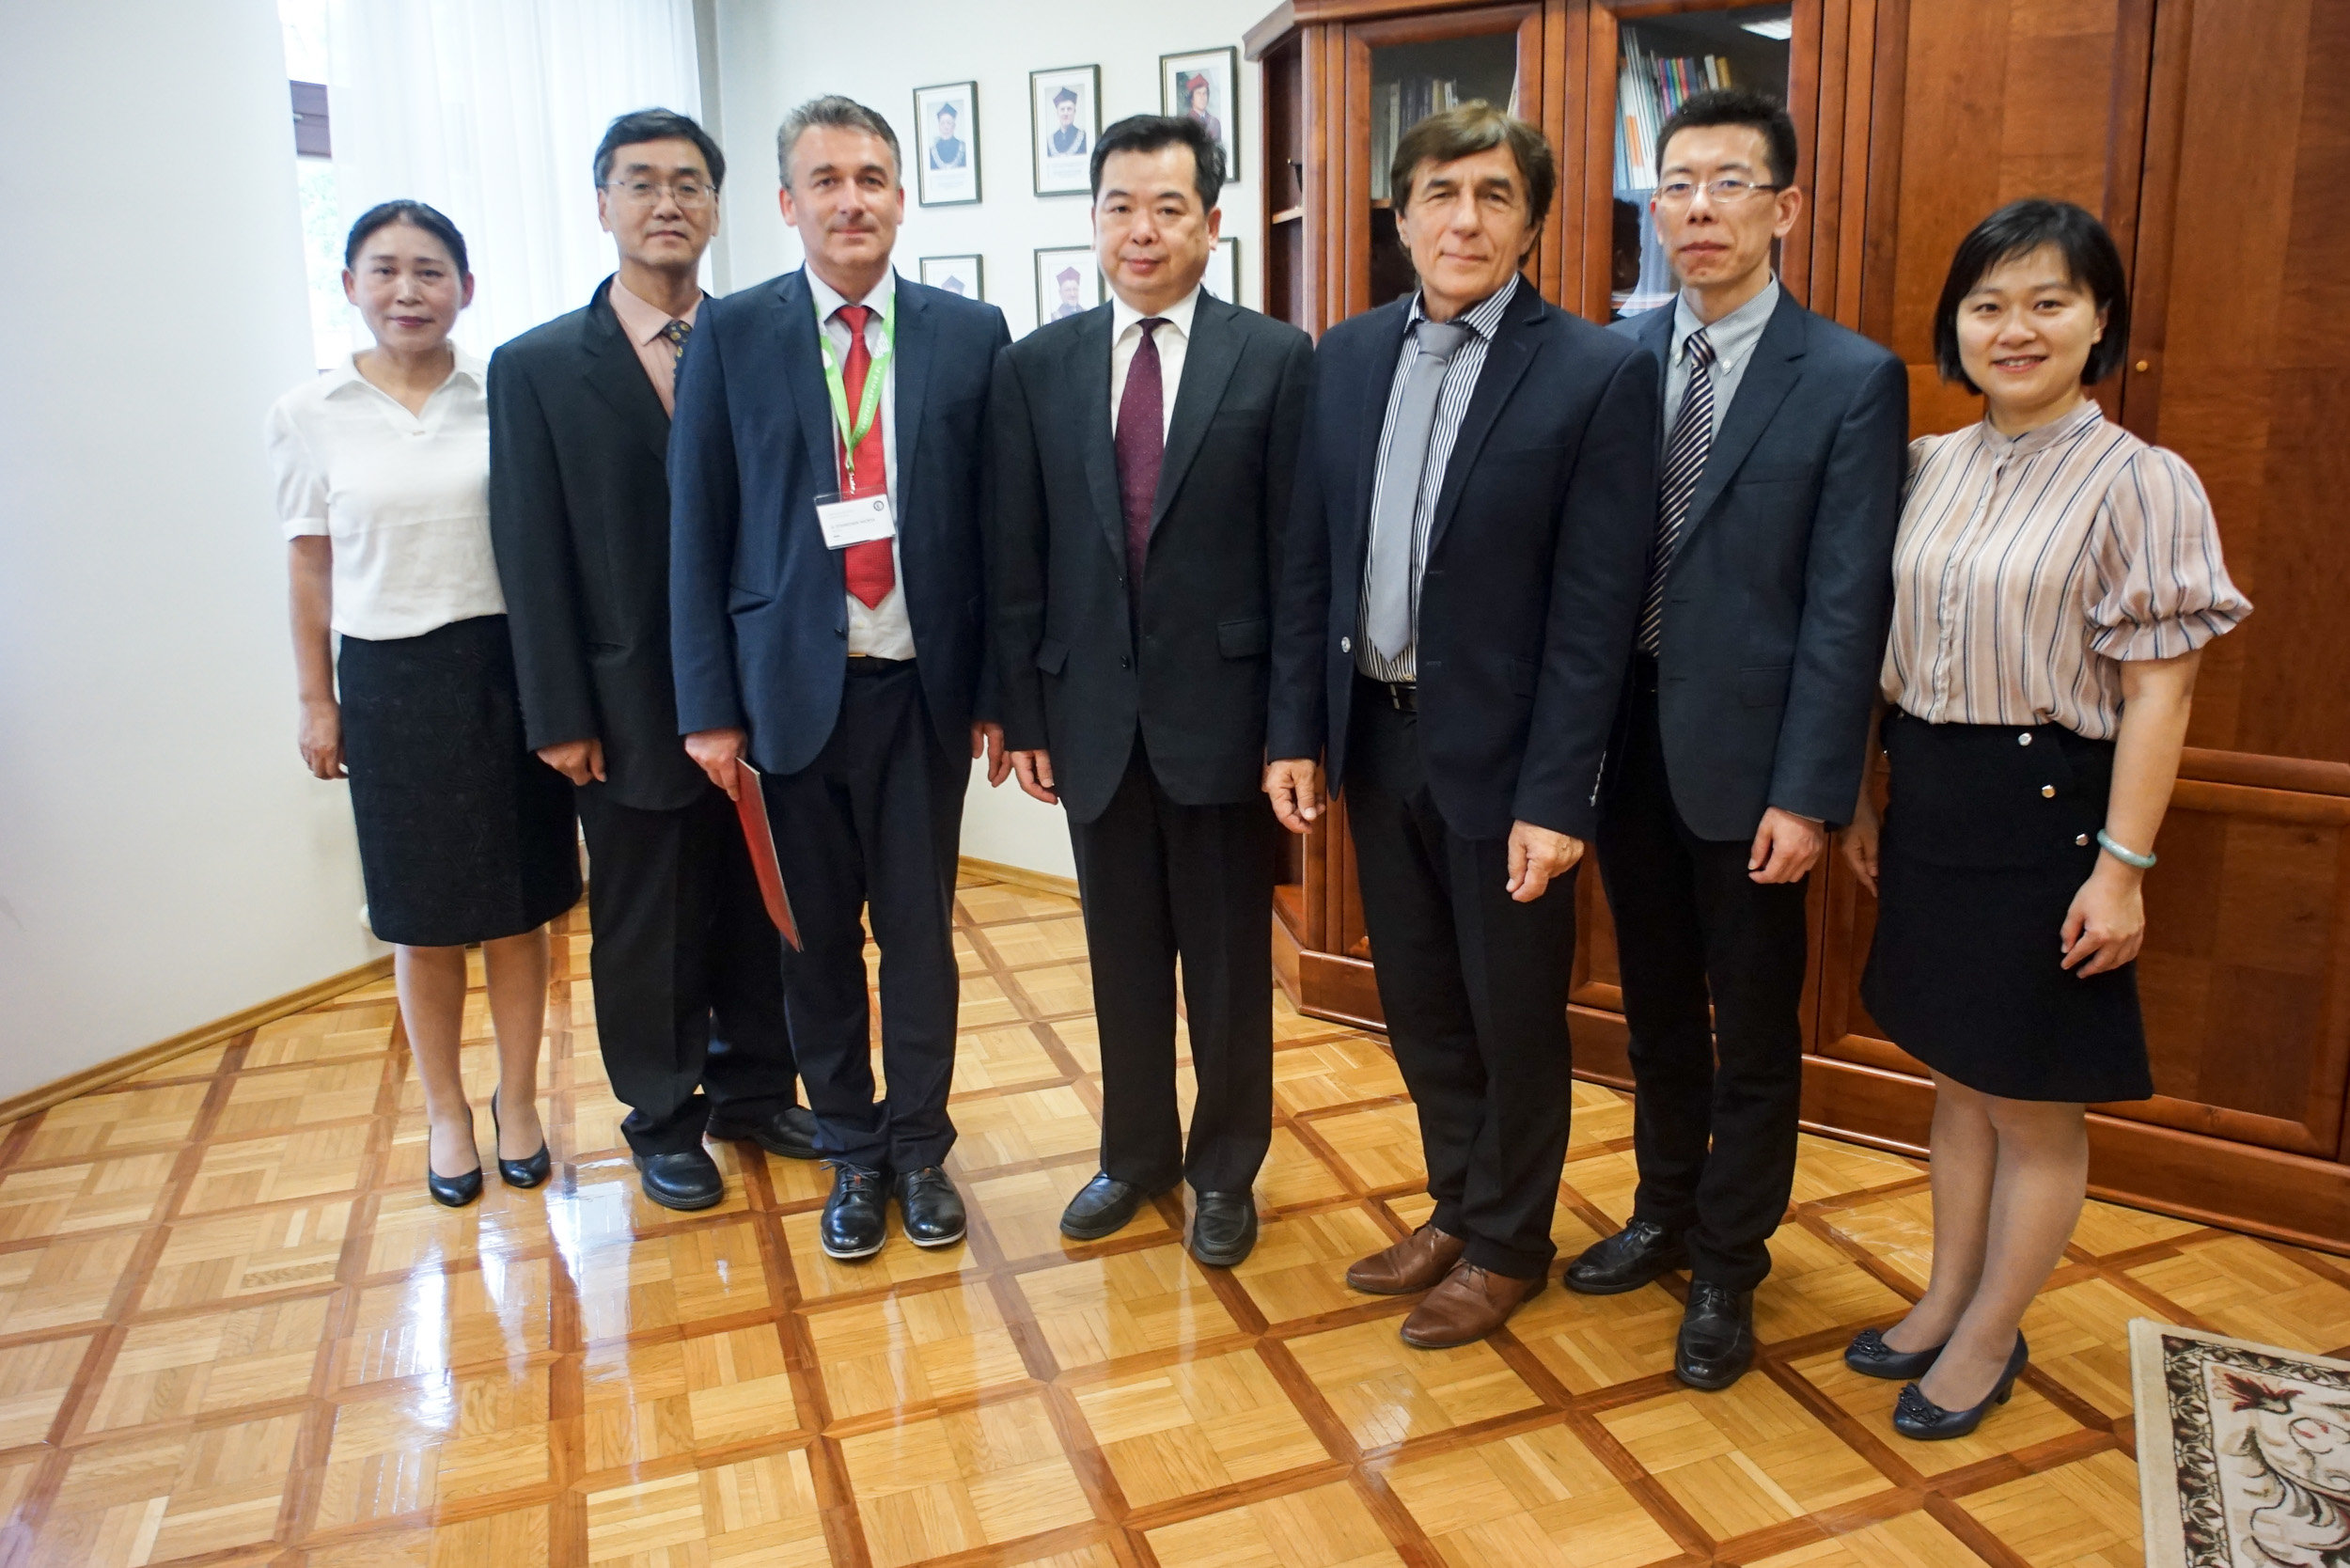 Przeniesienie do informacji o tytule: Umowa pomiędzy Uniwersytetem Opolskim a Uniwersytetem Technicznym z prowincji Fujian podpisana